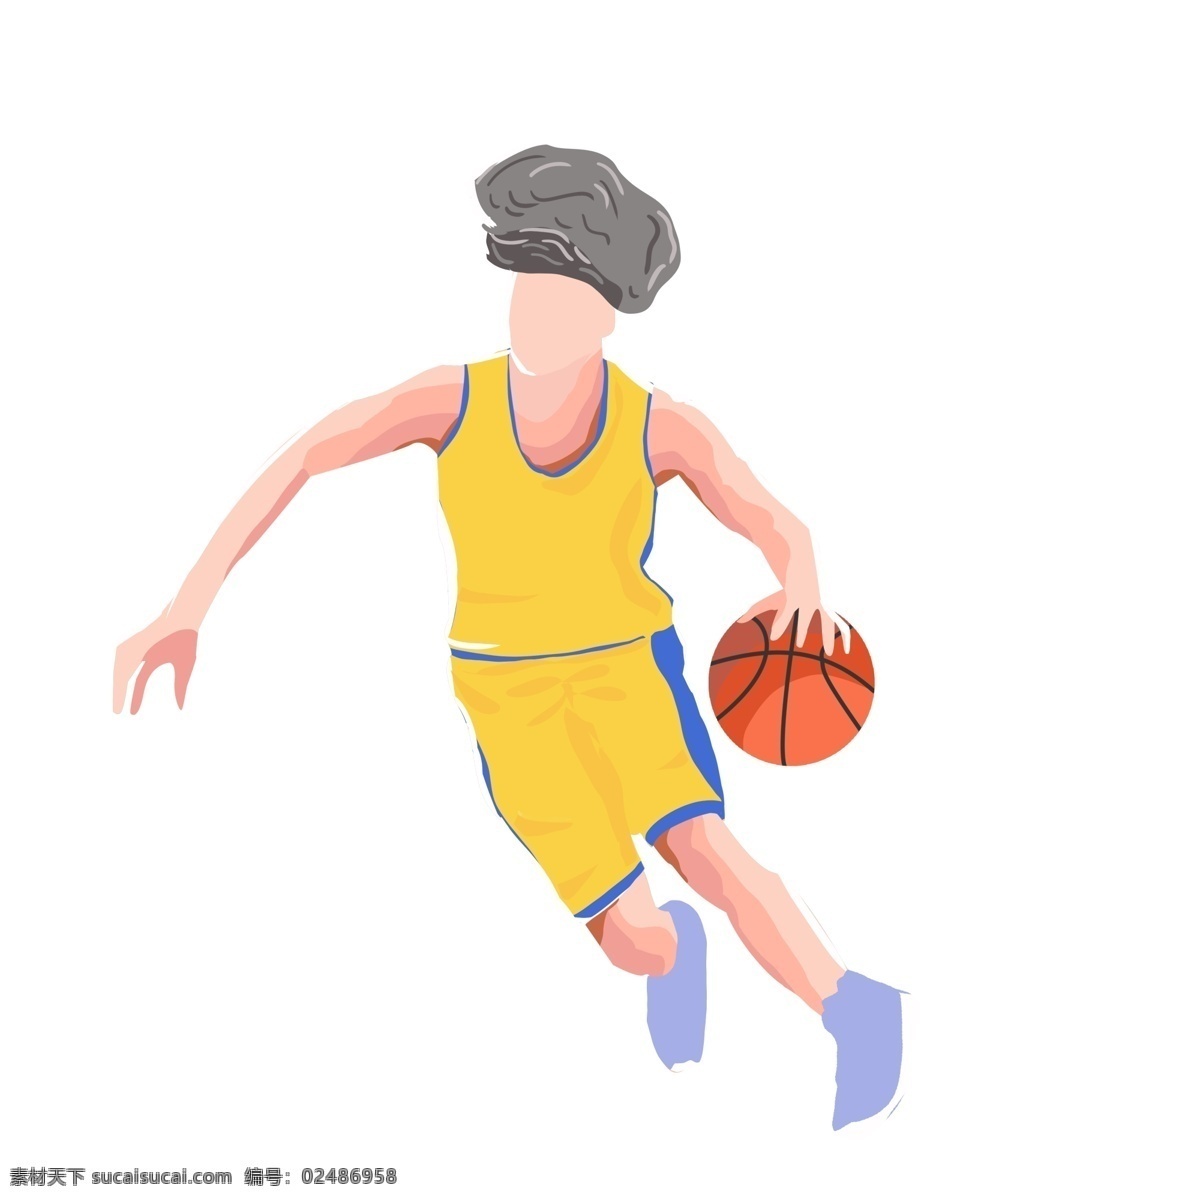 彩绘 卡通 篮球 人物 图案 元素 打球 运动员 卡通人物 设计元素 元素装饰 元素设计 简约 手绘元素 psd元素